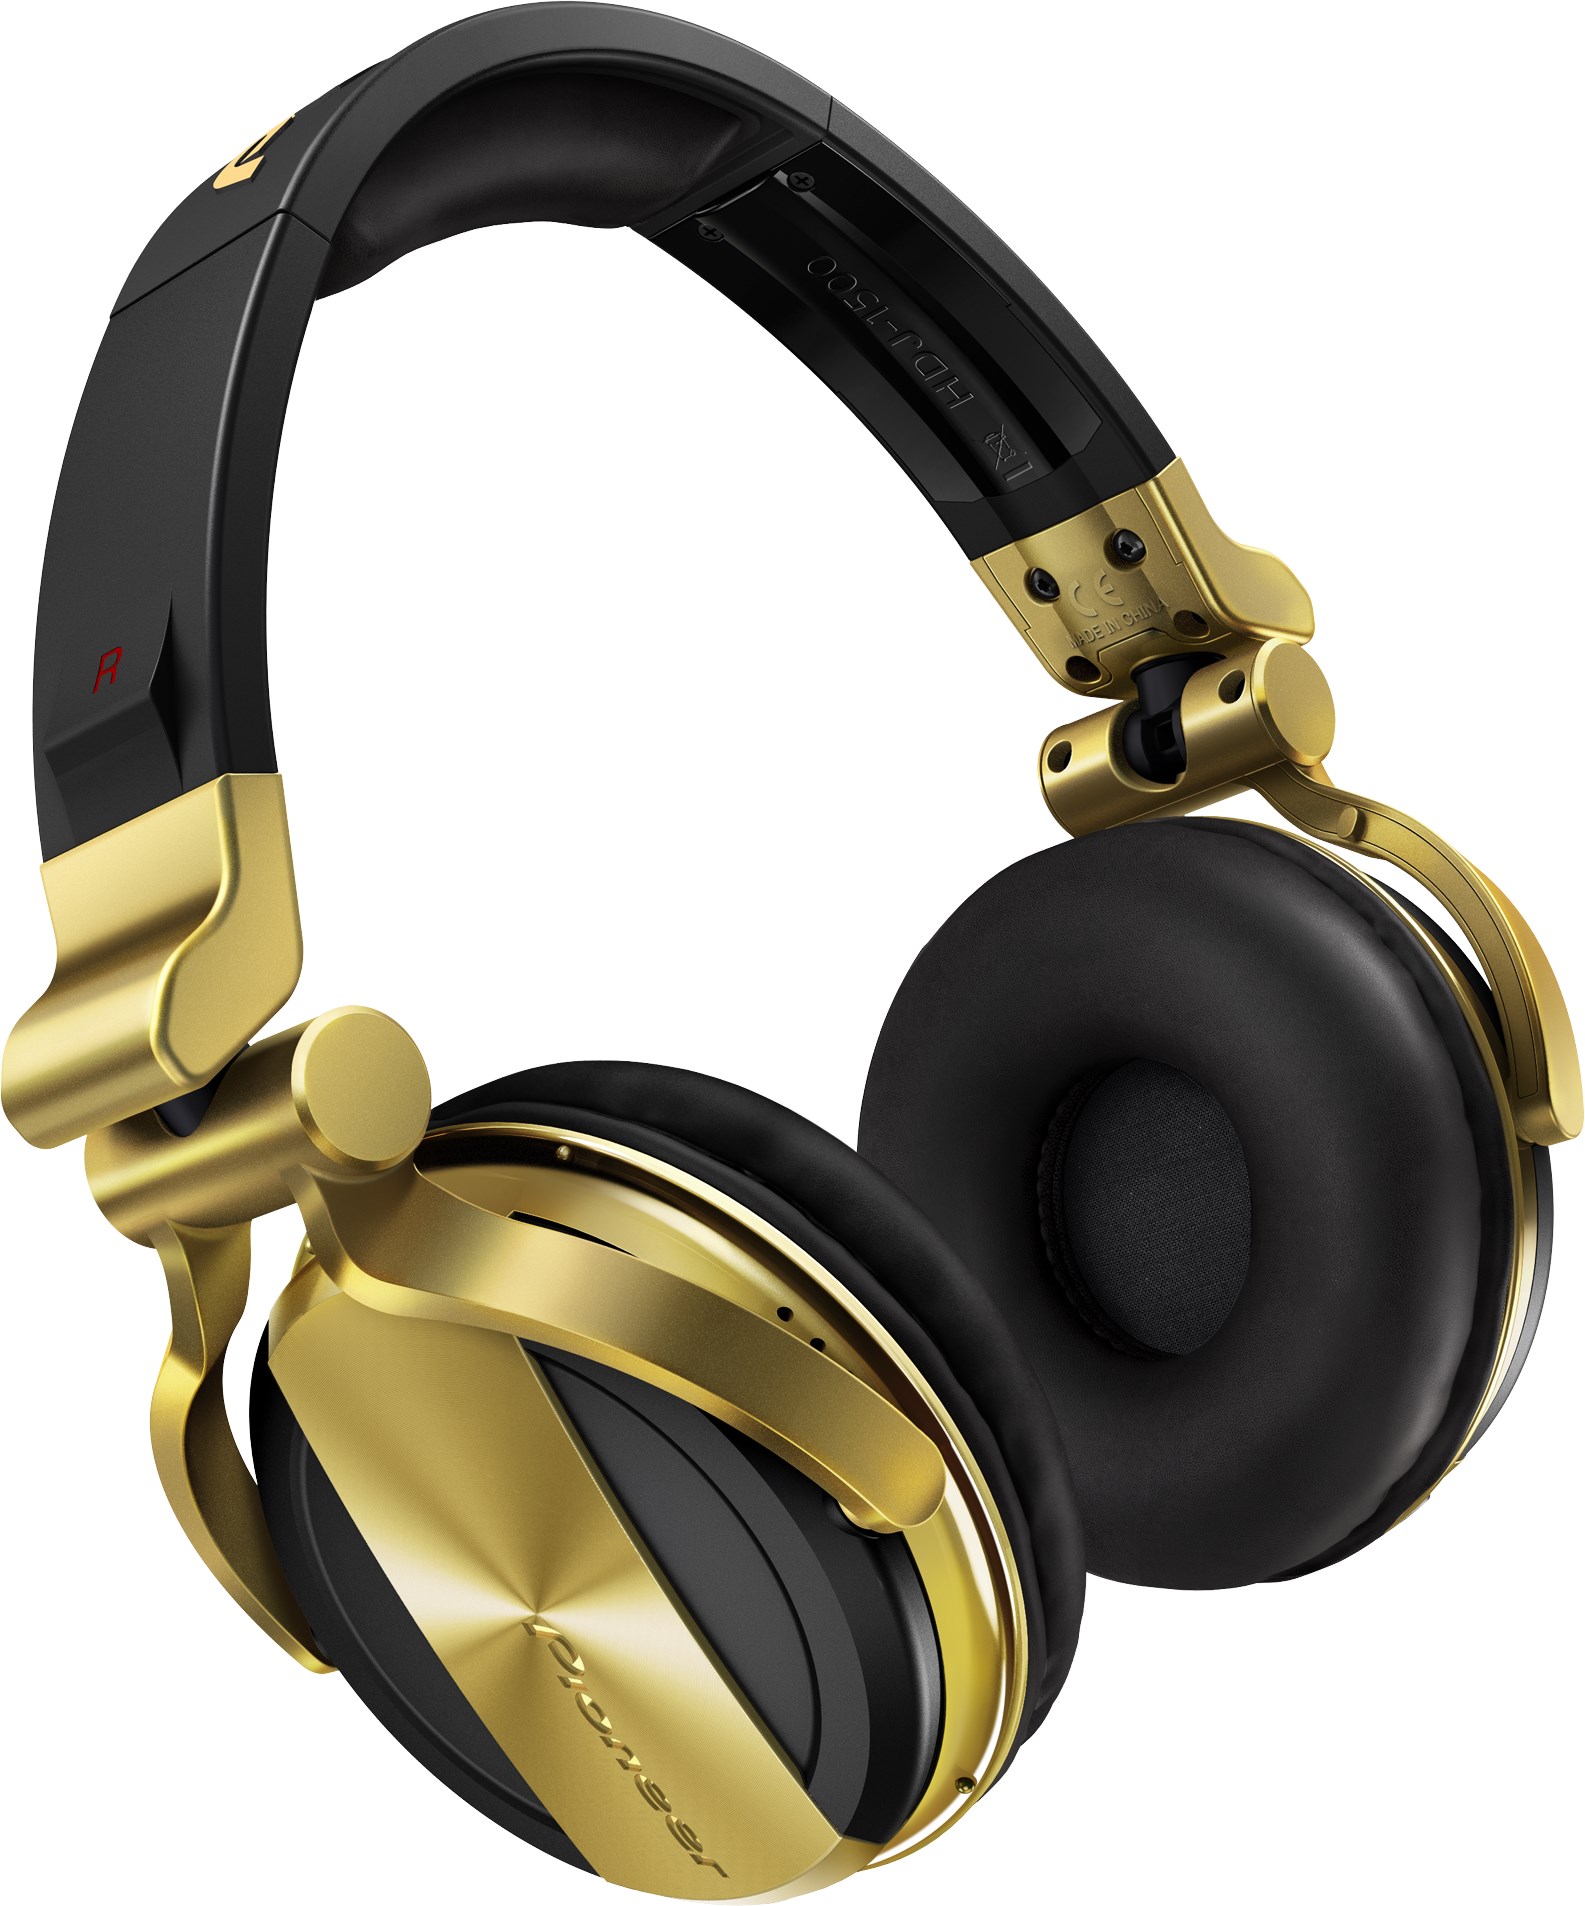 Nuevos auriculares Pioneer HDJ-1500-N en color dorado